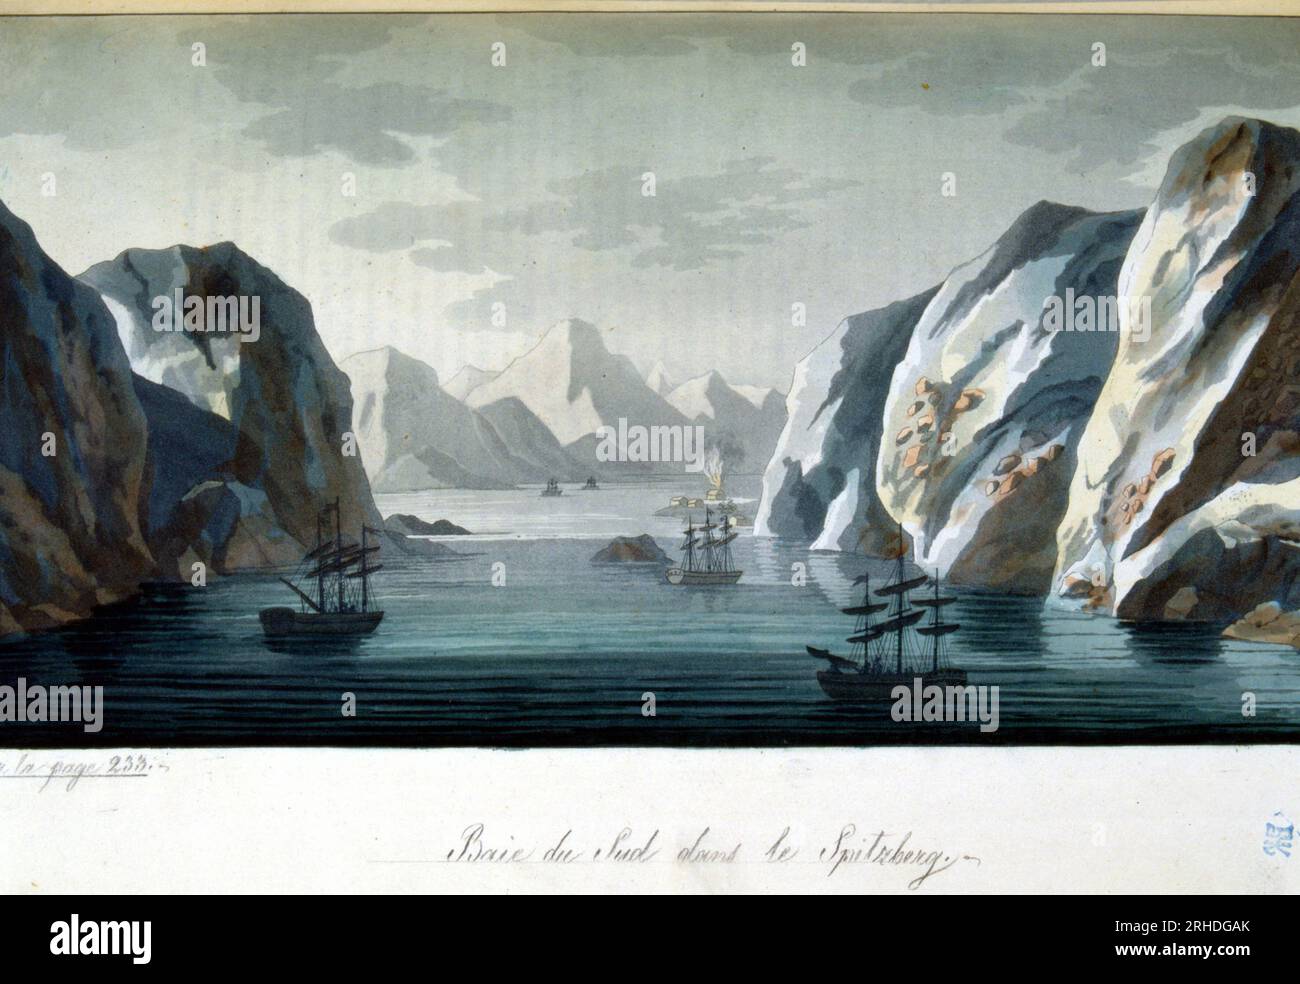 Baie du sud dans le Spitzberg, Norvege - dans 'le costume ancien et moderne' par Jules Ferrario, 1819-1820 Banque D'Images